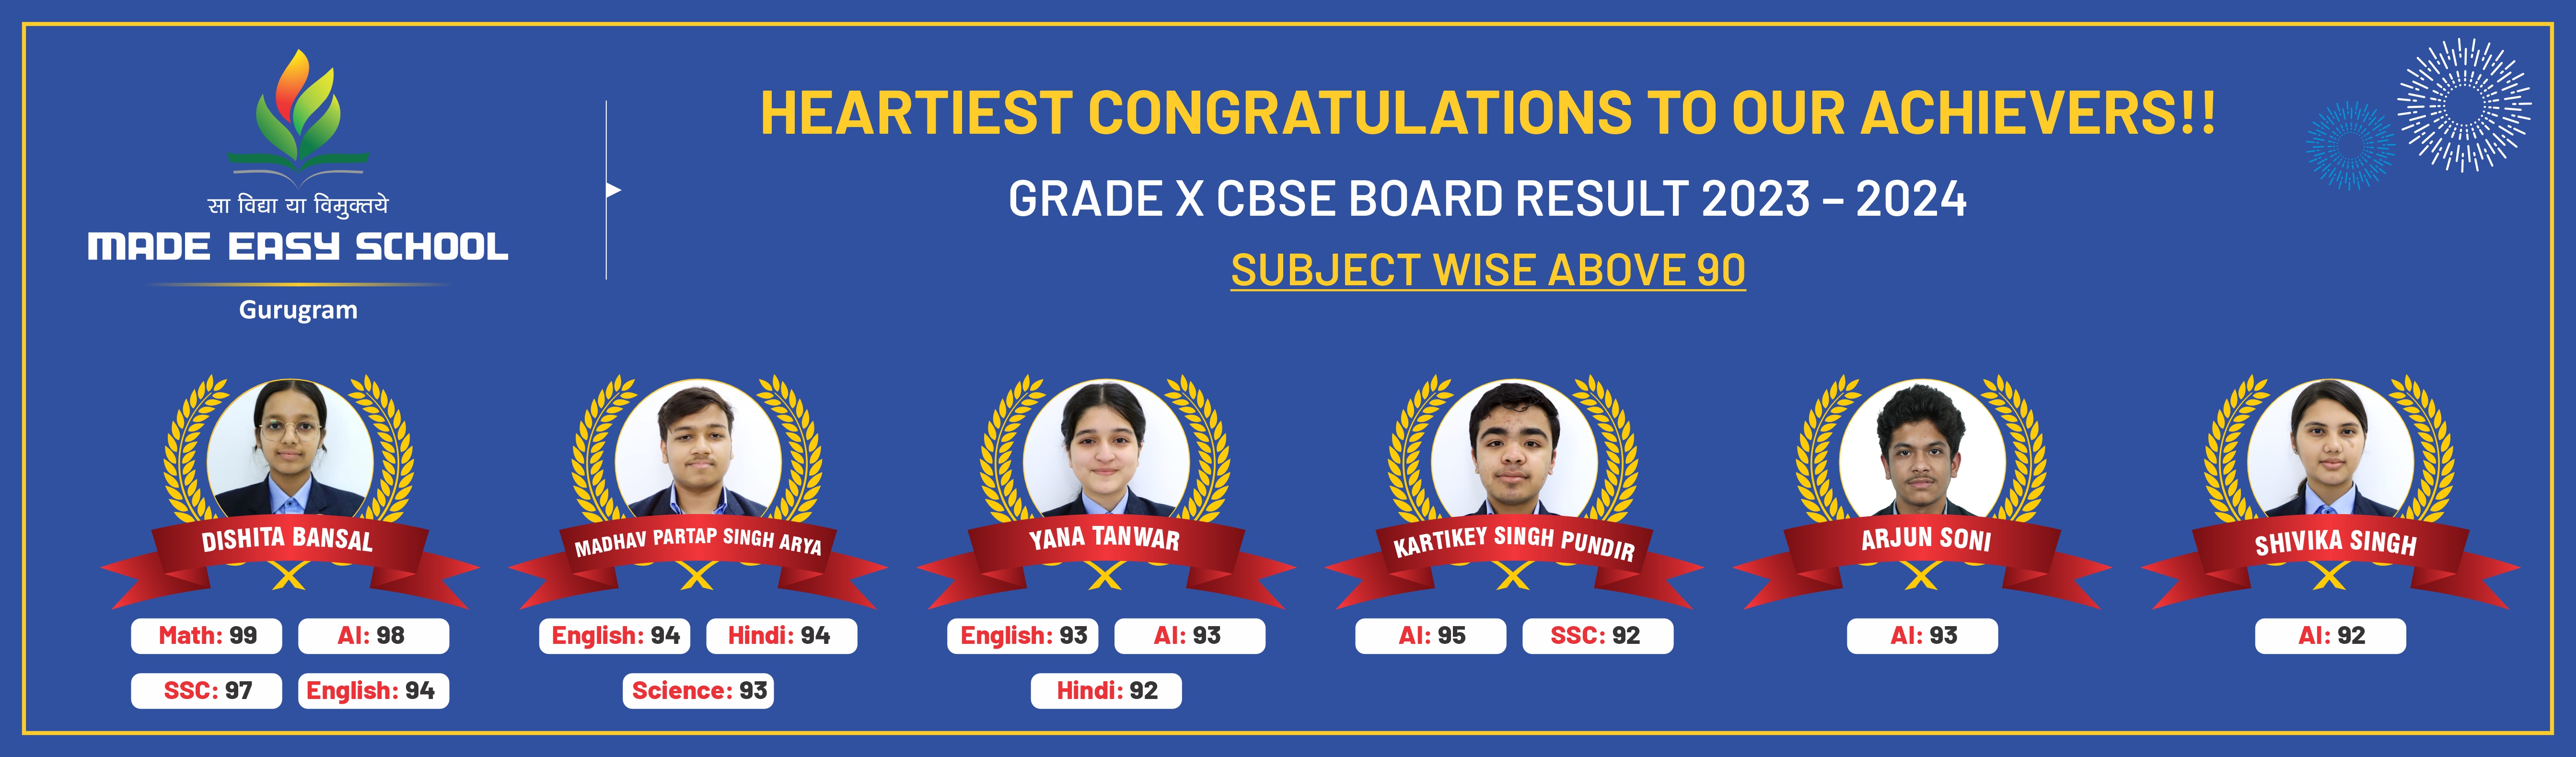 Grade X CBSE Board Result 2023-2024